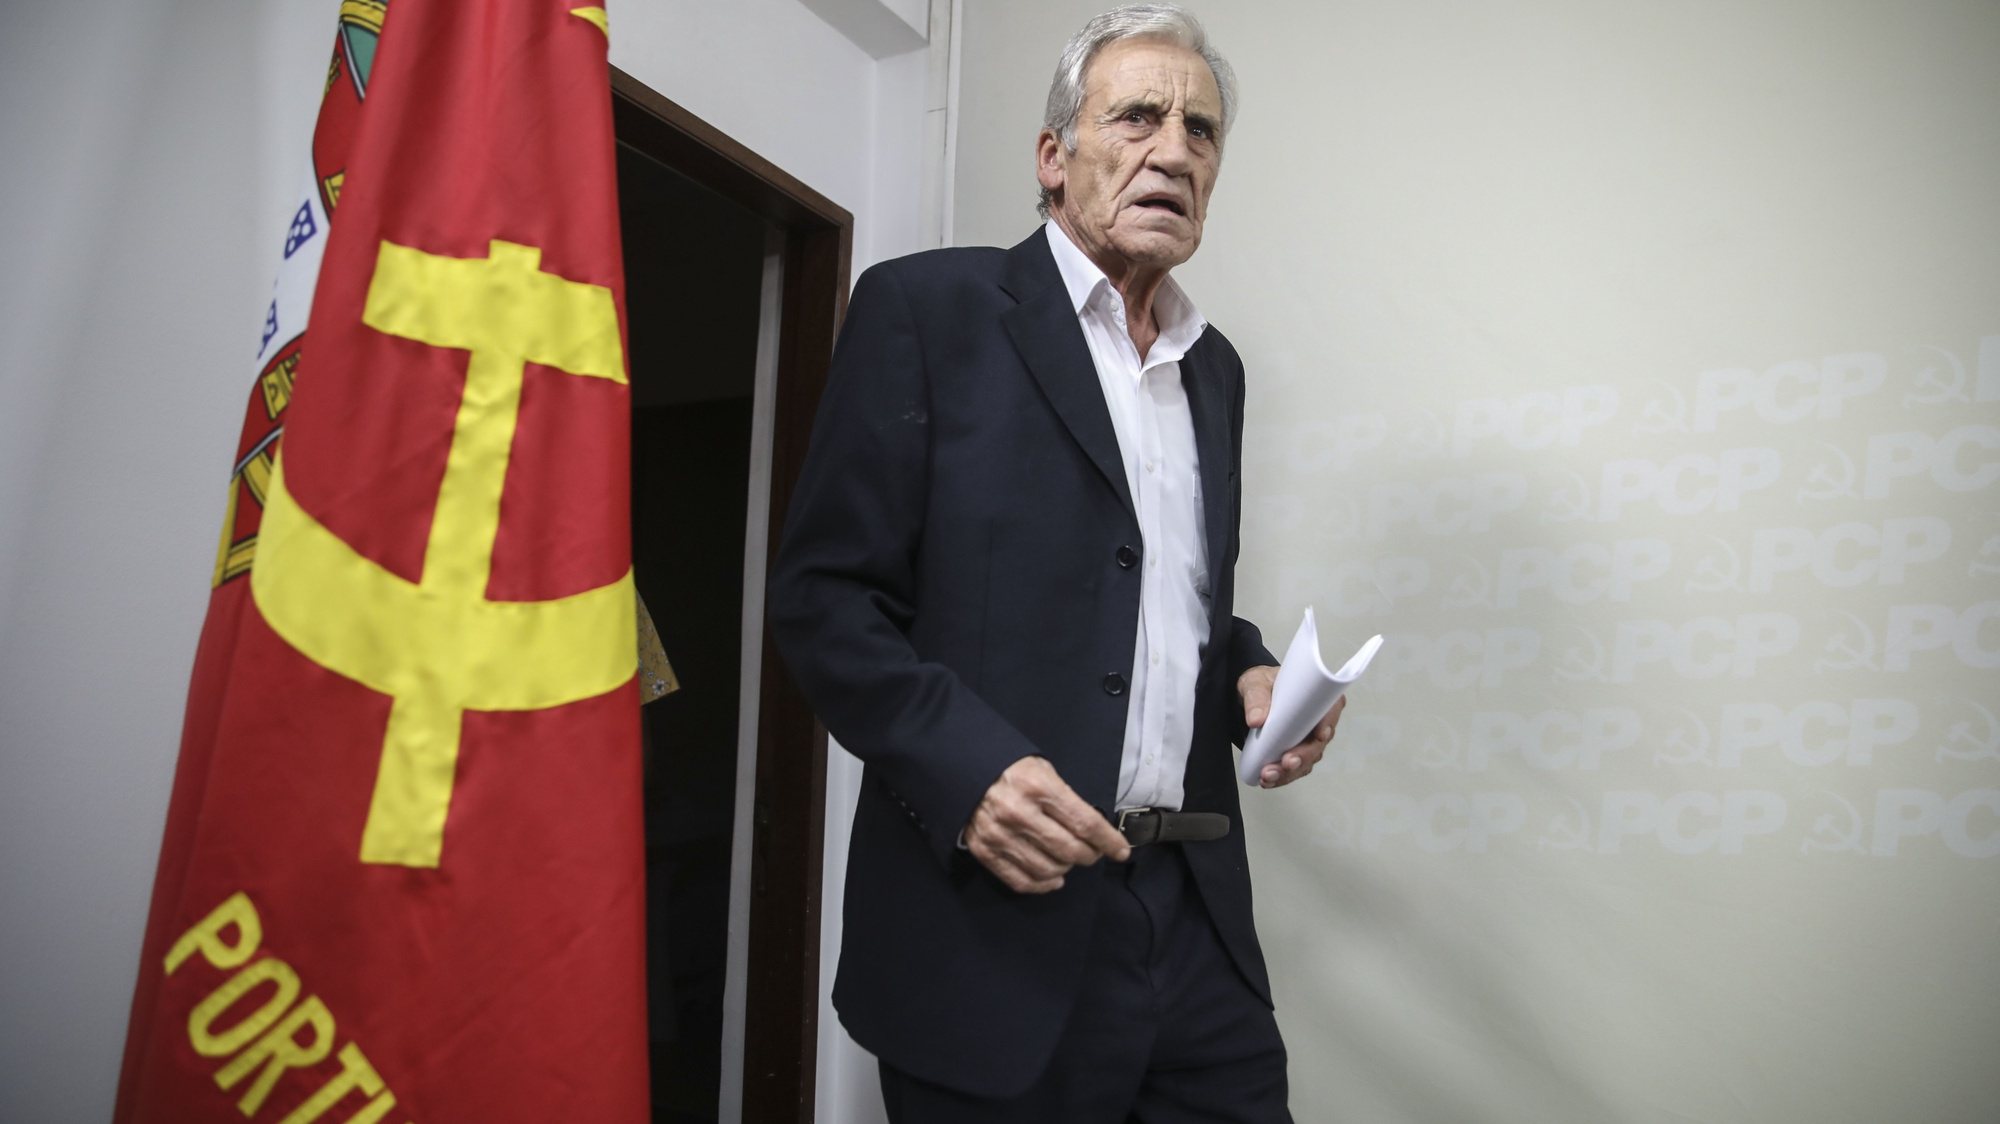 O secretário-geral do Partido Comunista Português (PCP), Jerónimo de Sousa, apresenta as principais conclusões após terminada a reunião do Comité Central em conferência de imprensa na sede do partido, 18 setembro 2022.  ANDRÉ KOSTERS/LUSA